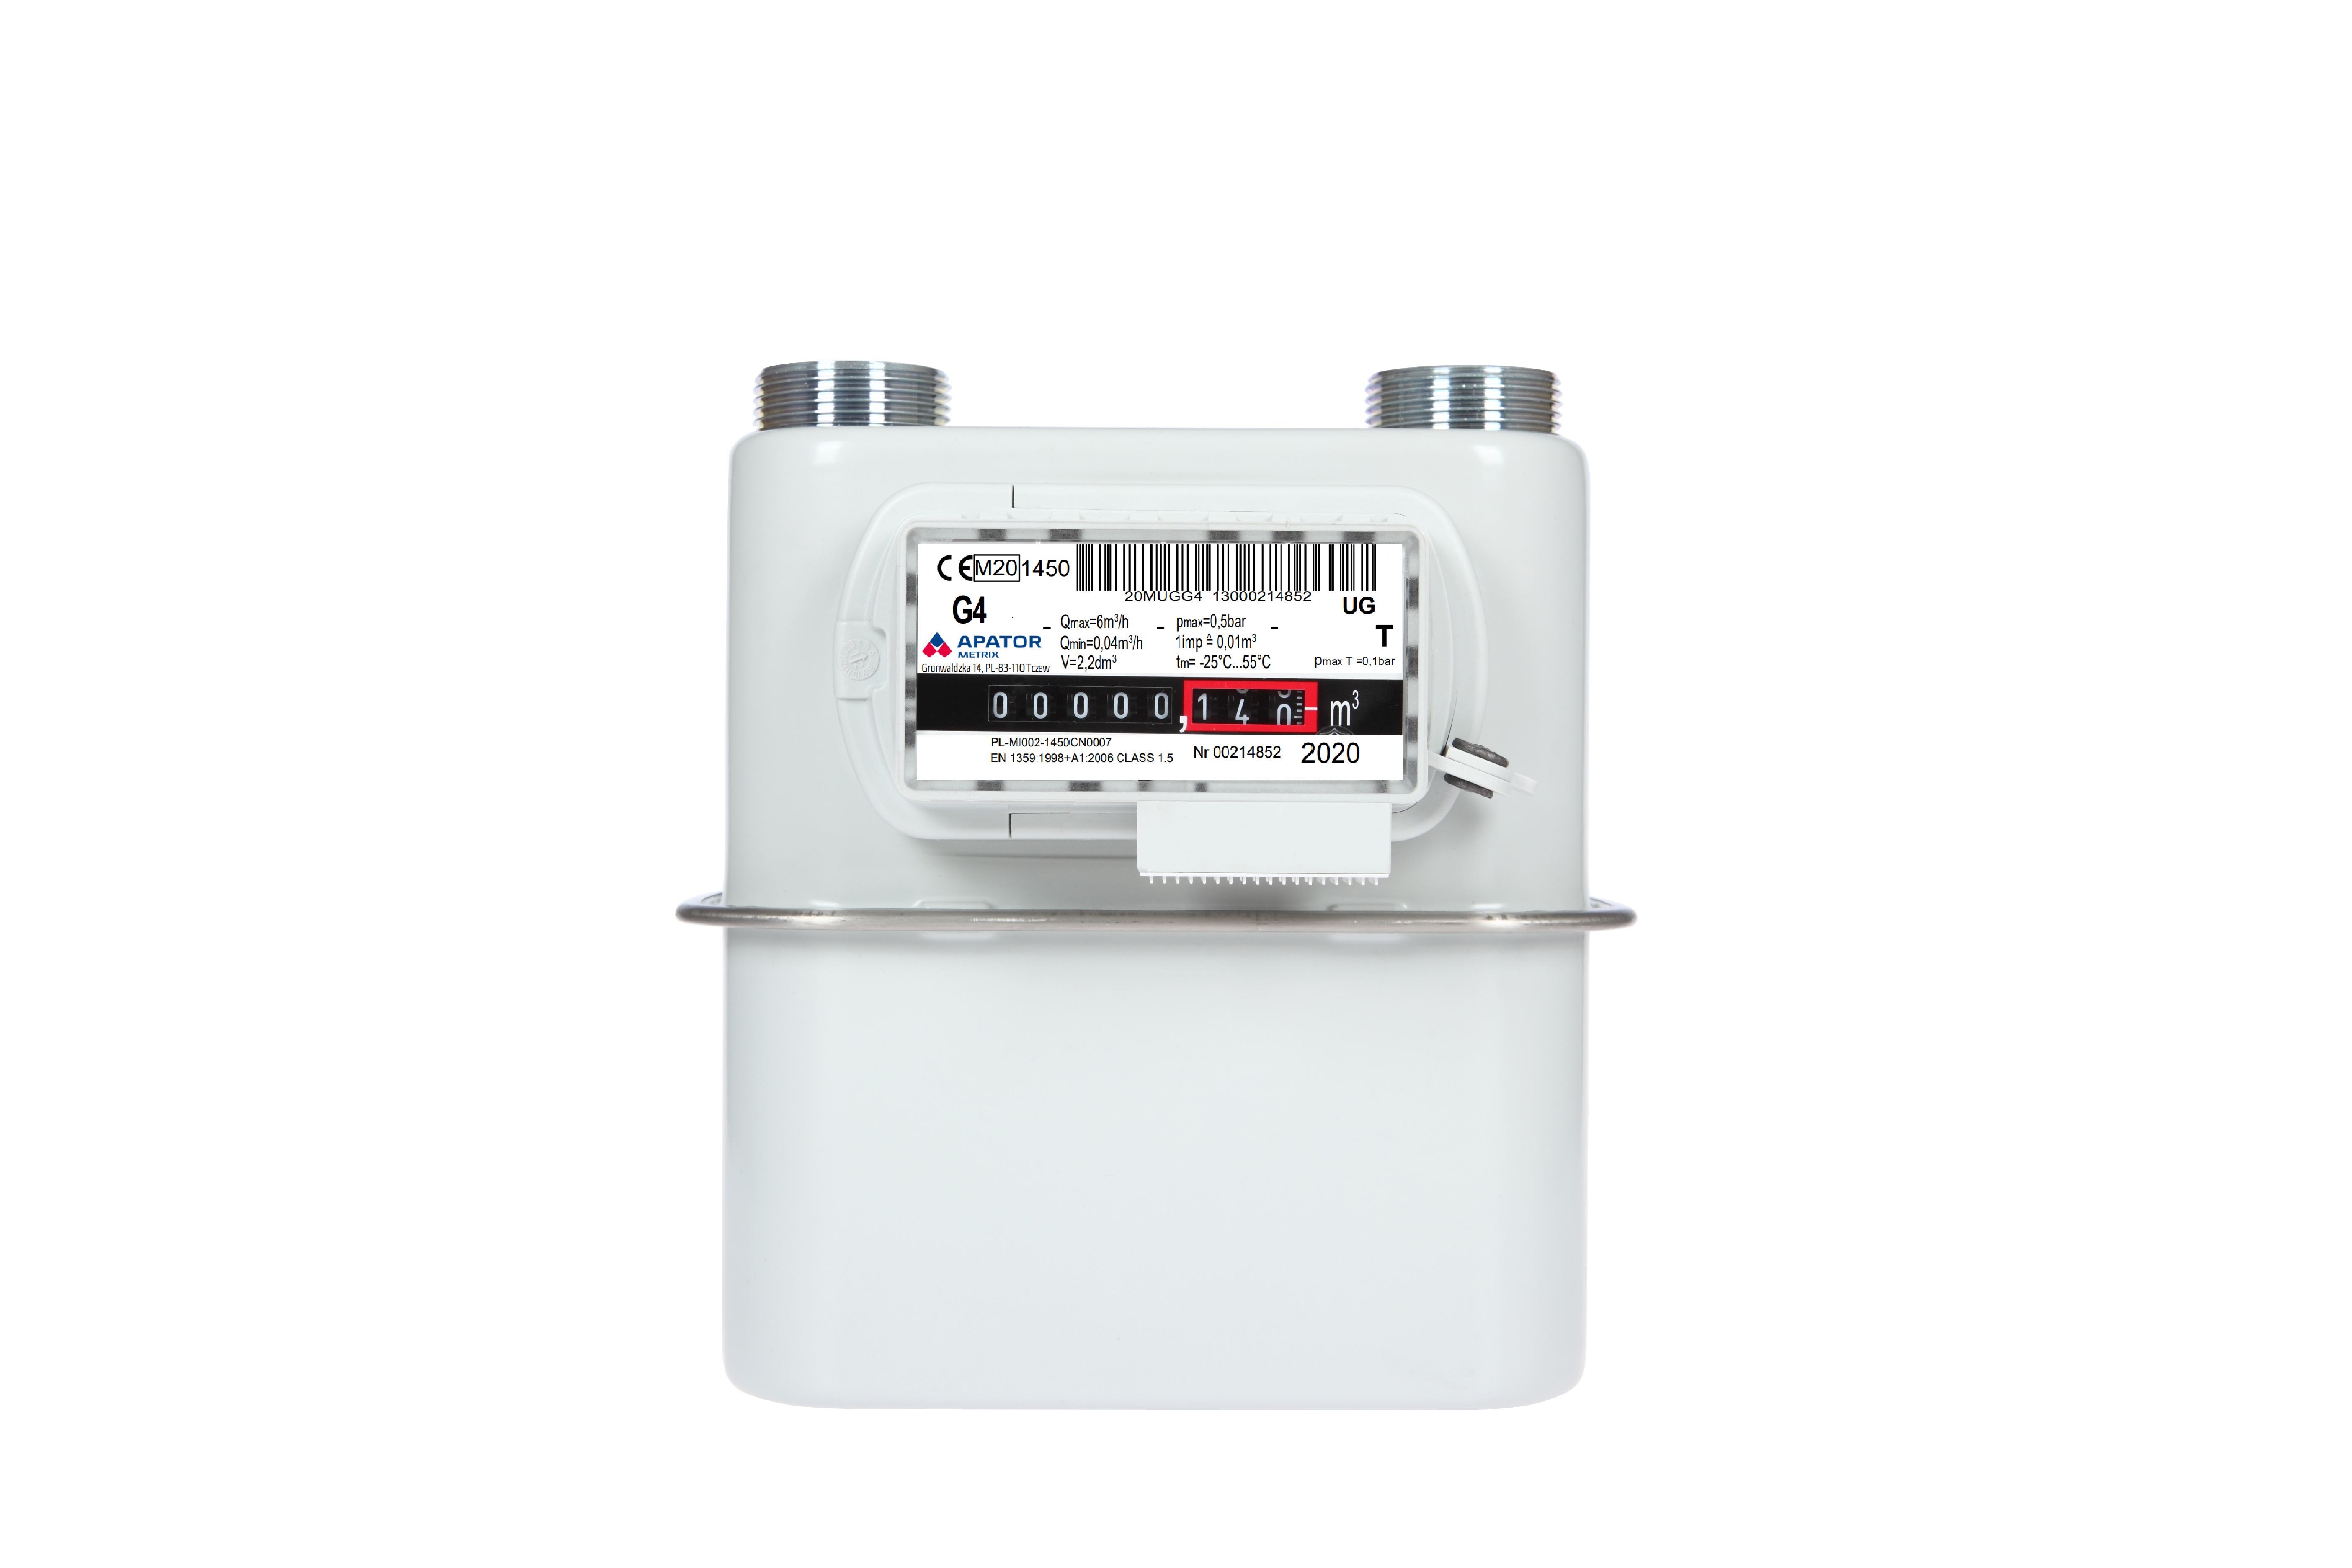 Smart AMR gas meter